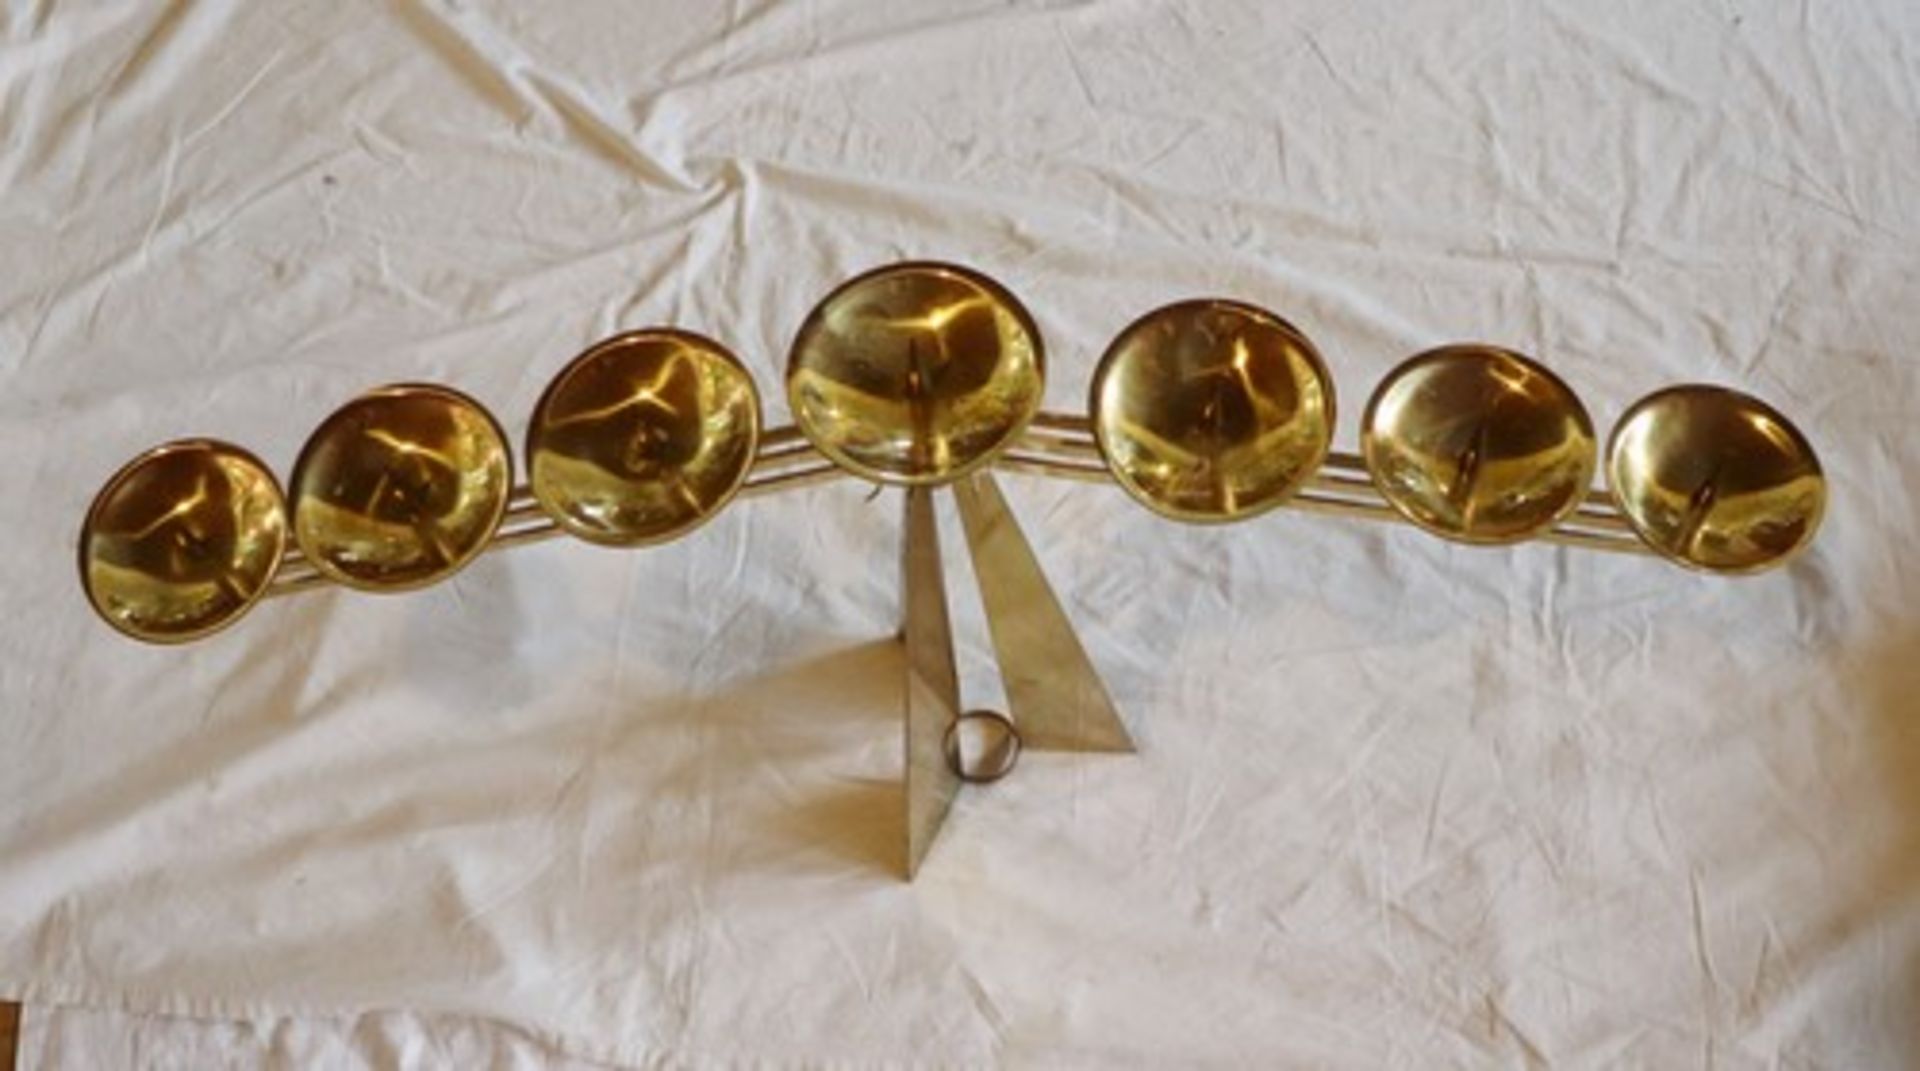 KerzenleuchterMessing, goldfarbenes Metall, ausgefallener Designentwurf, 7-flammig, 2 Arme, - Bild 2 aus 2